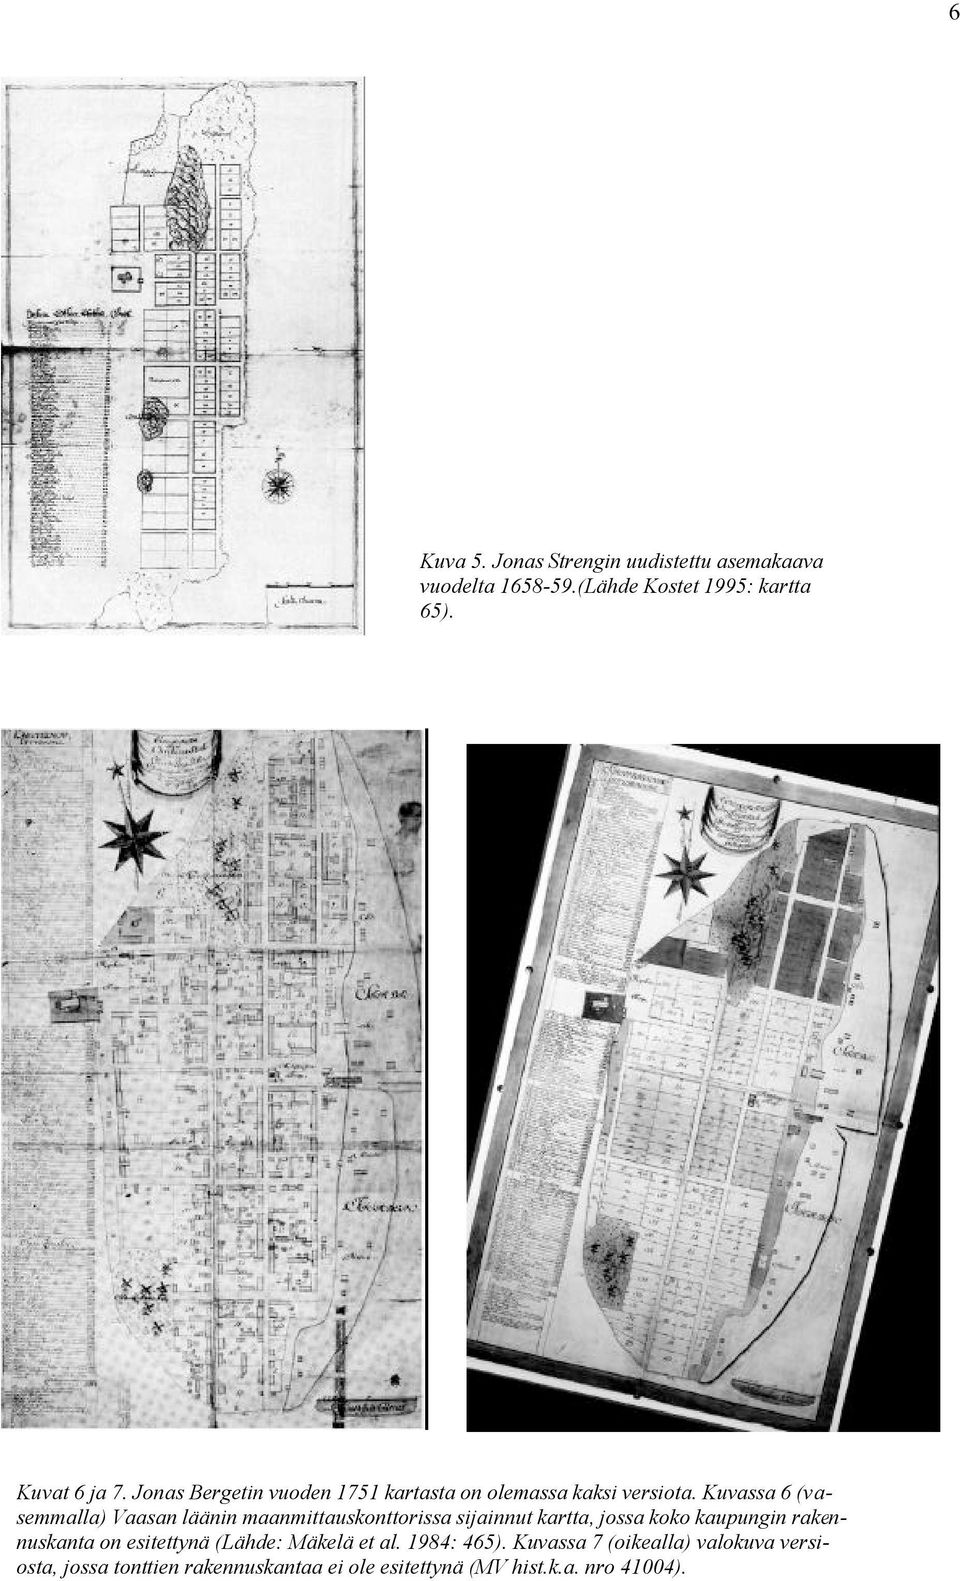 Kuvassa 6 (vasemmalla) Vaasan läänin maanmittauskonttorissa sijainnut kartta, jossa koko kaupungin